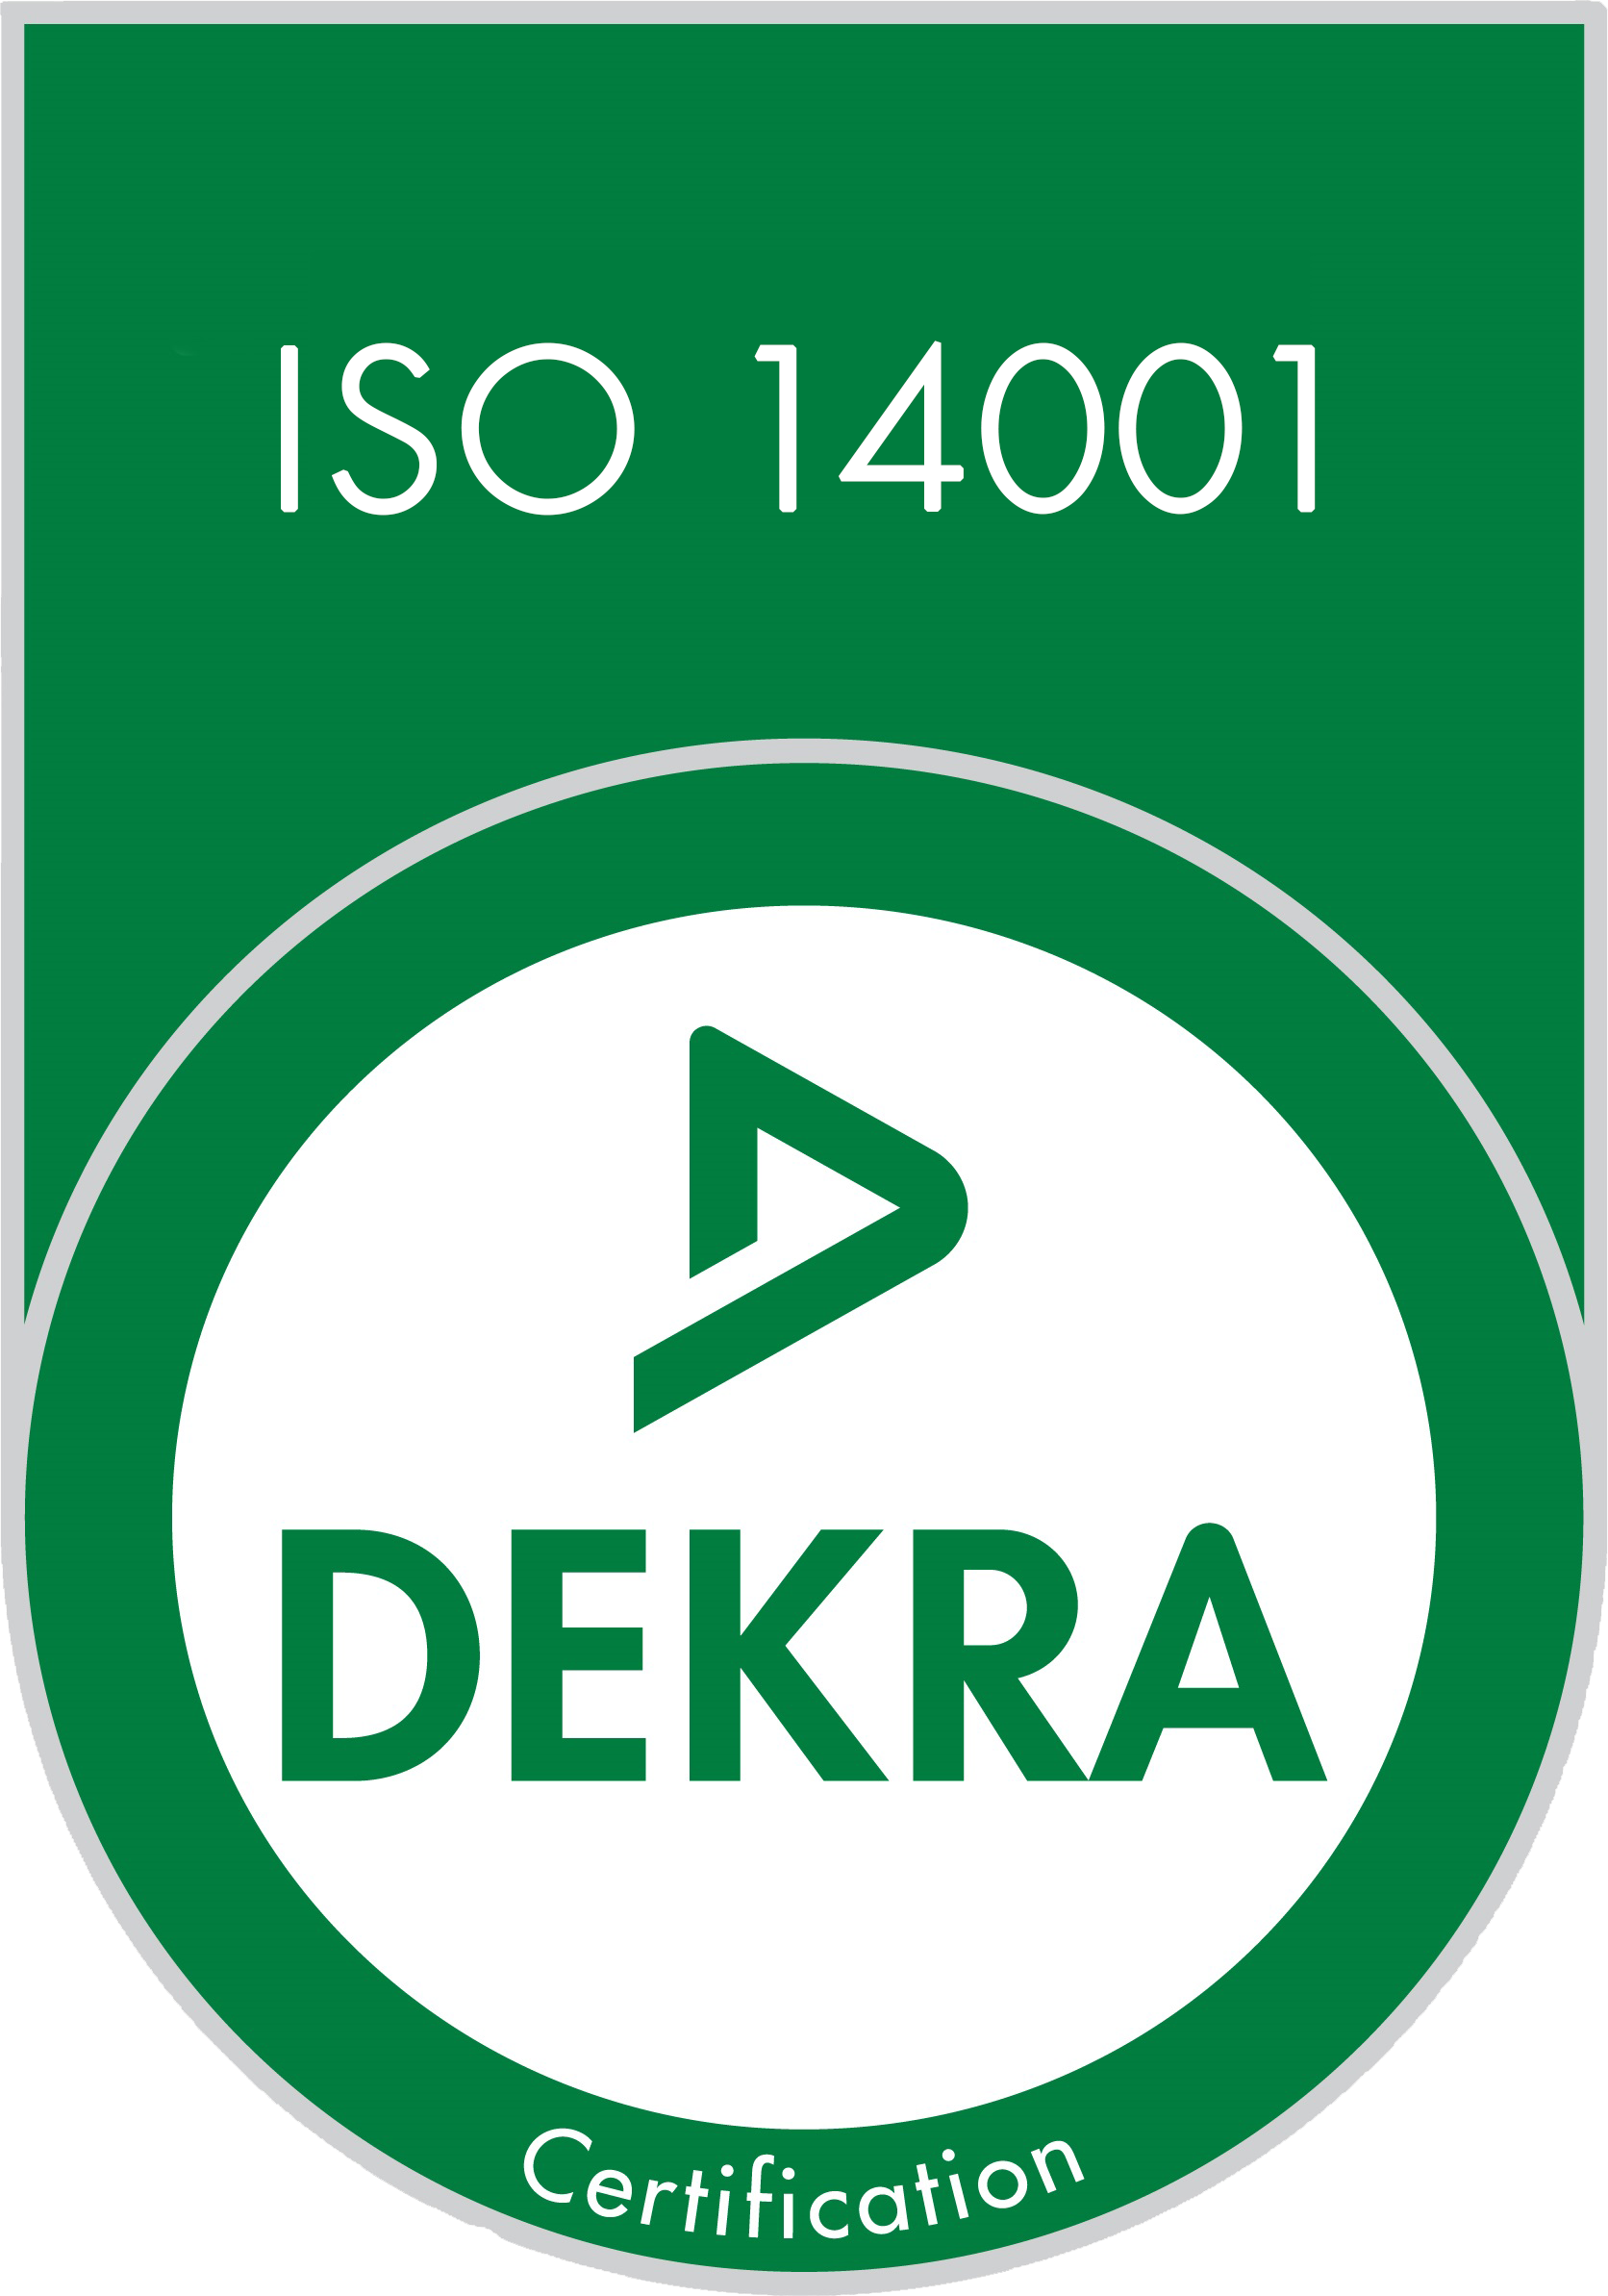 IFS 14001 DEKRA